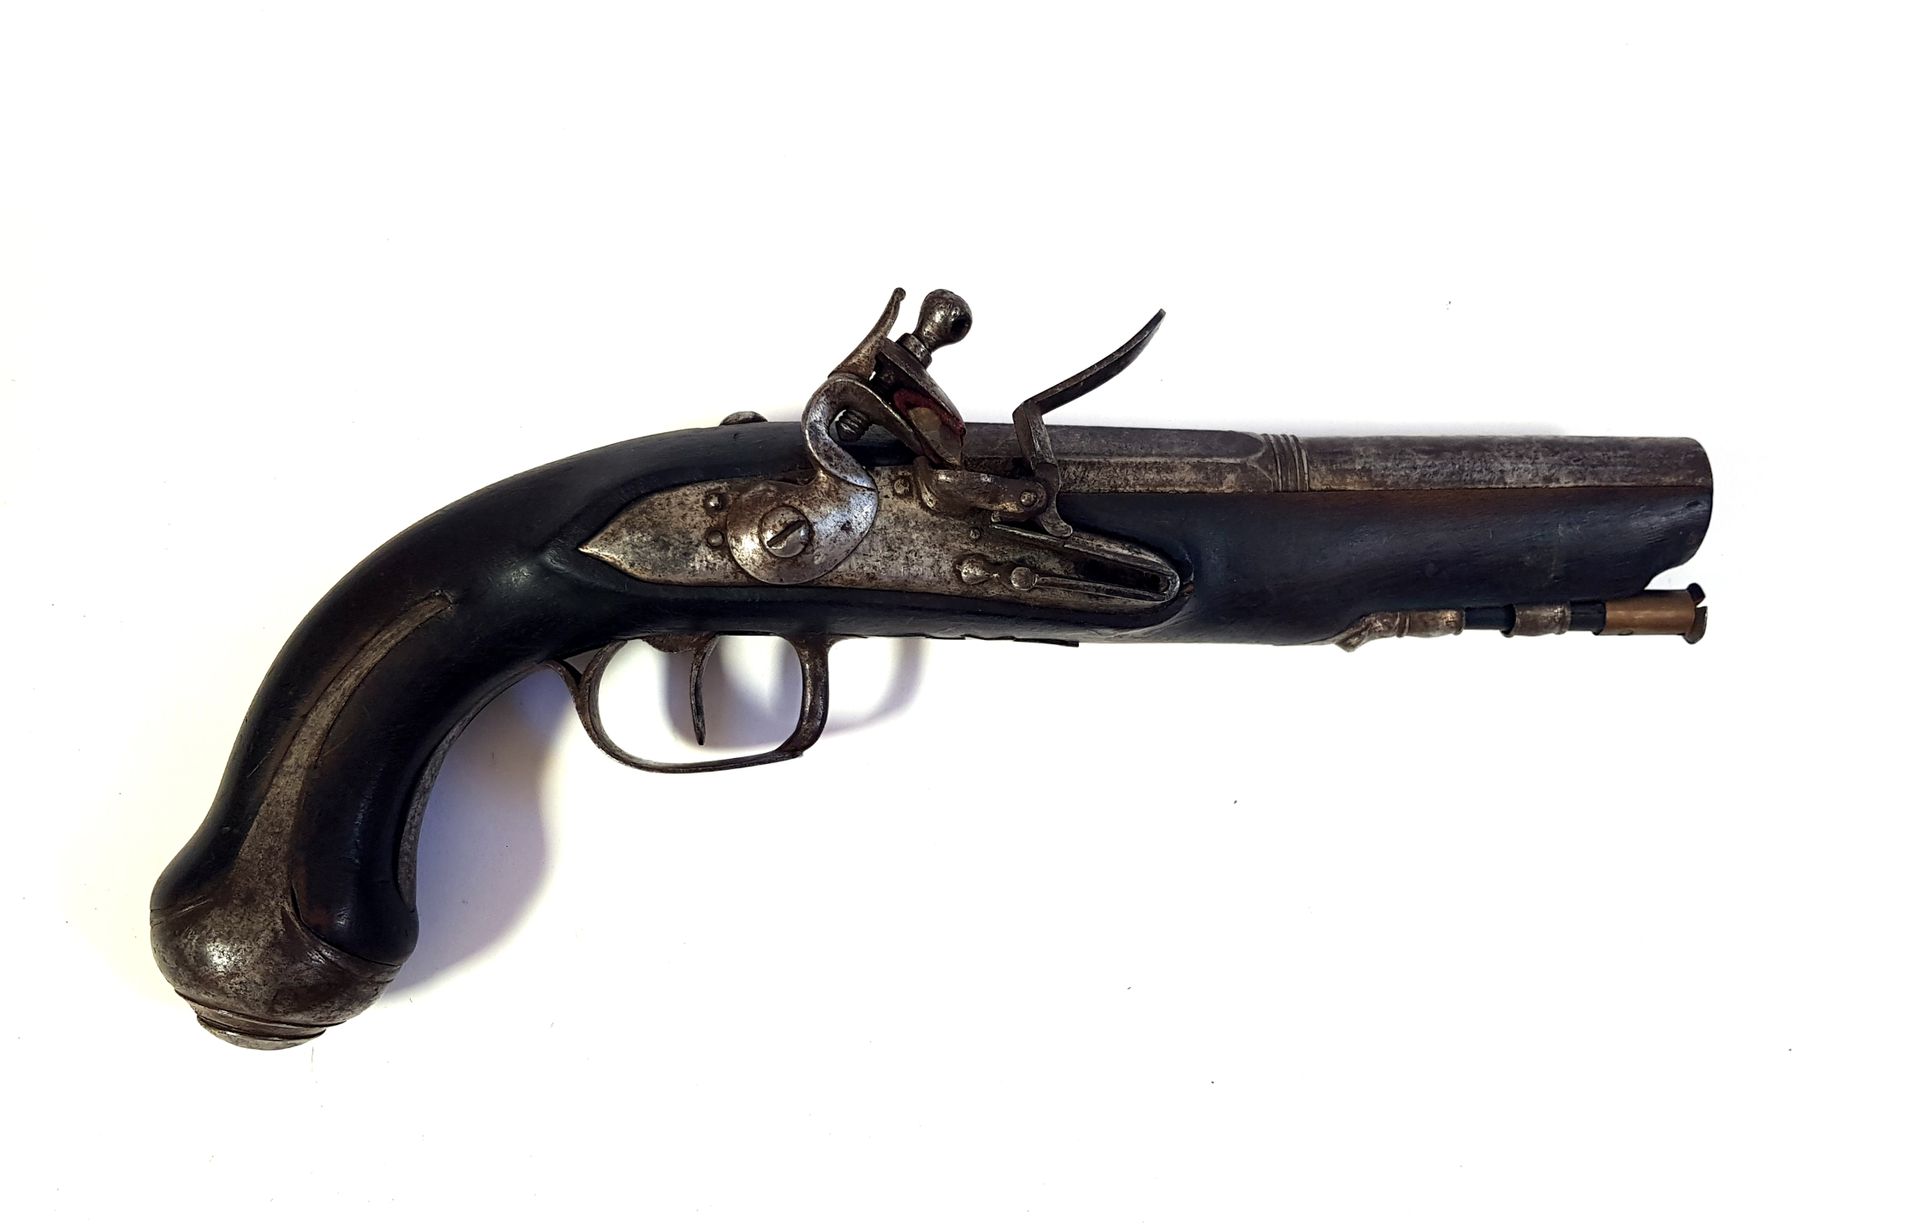 Null Pistola de chispa

L. 25 cm

Desgastado

Categoría D - venta libre a mayore&hellip;